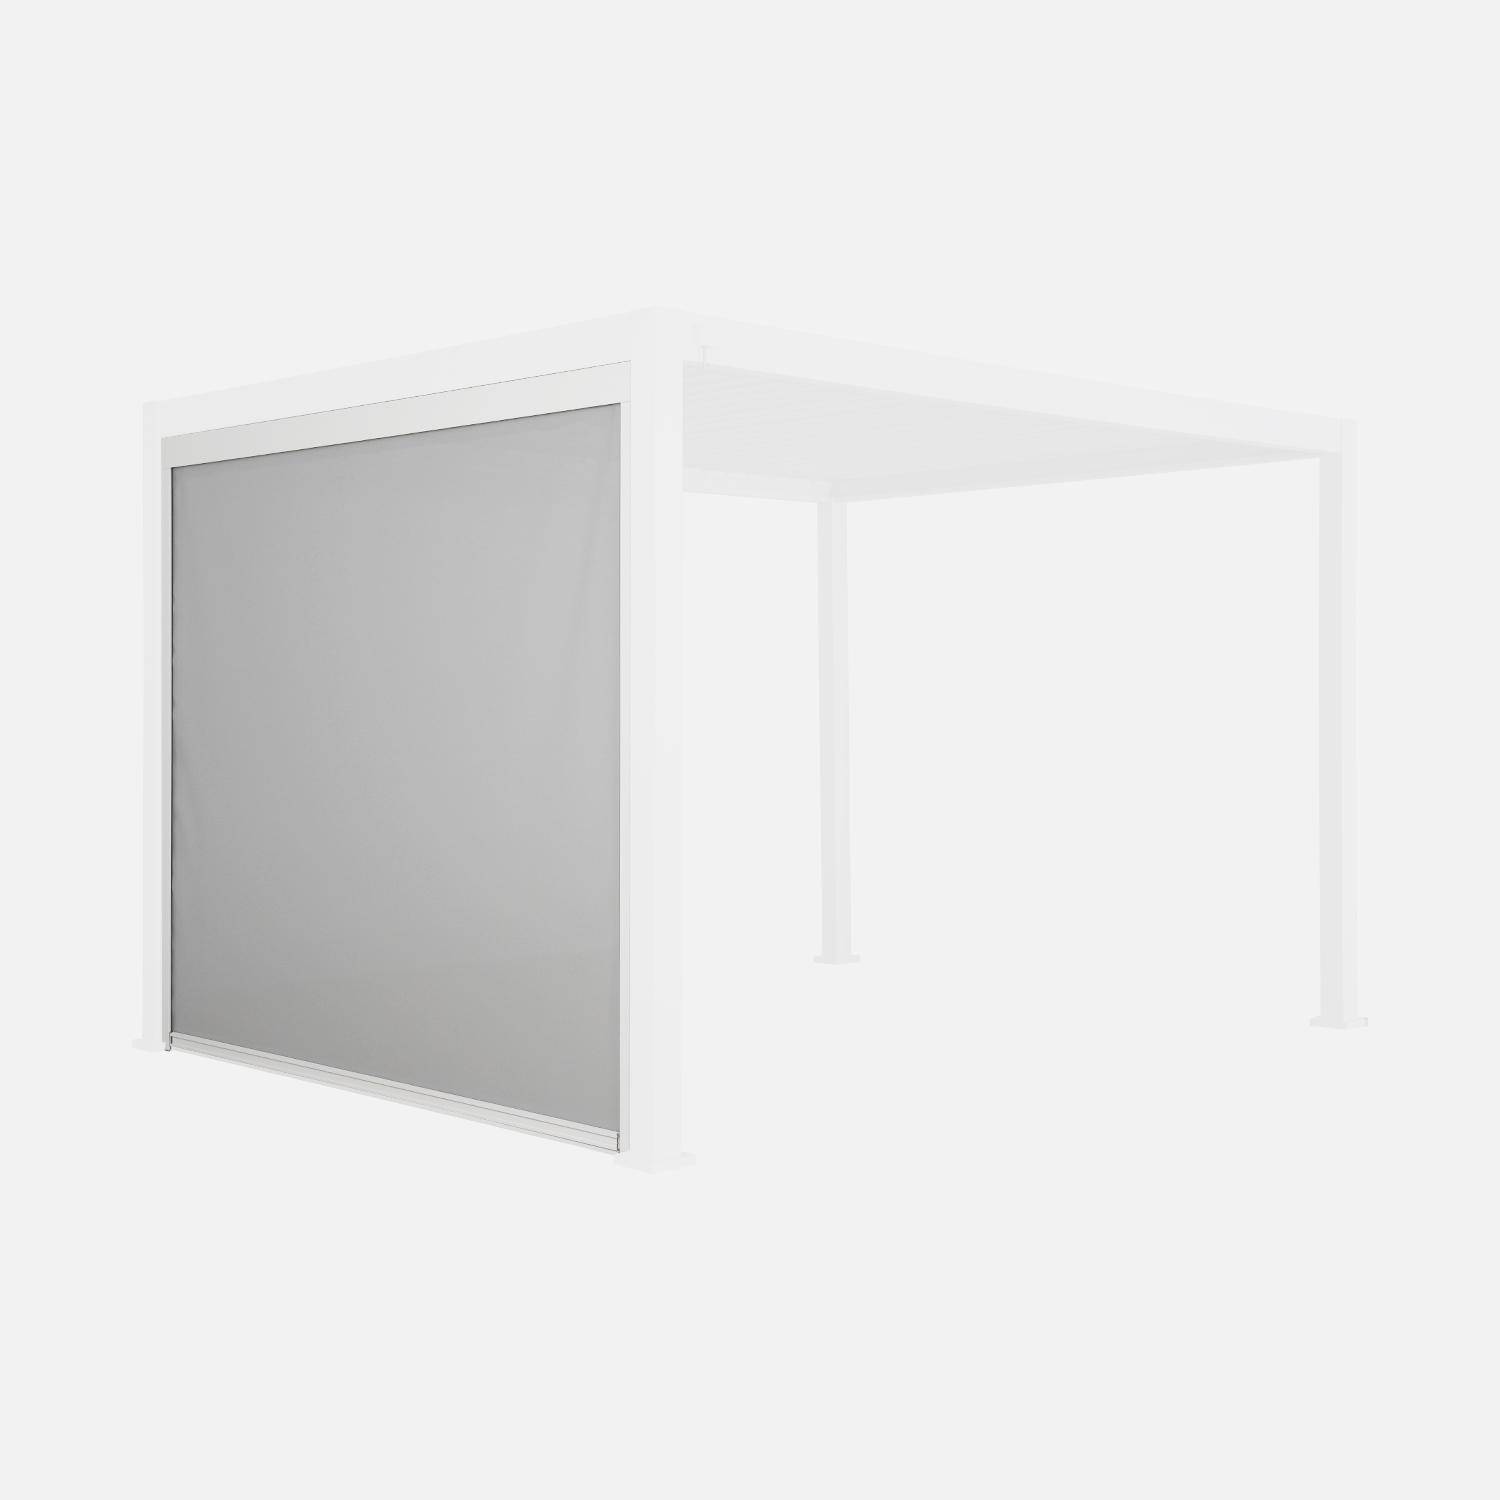 Store blanc pour pergola bioclimatique – Triomphe – 3m, aluminium et textilène,sweeek,Photo3